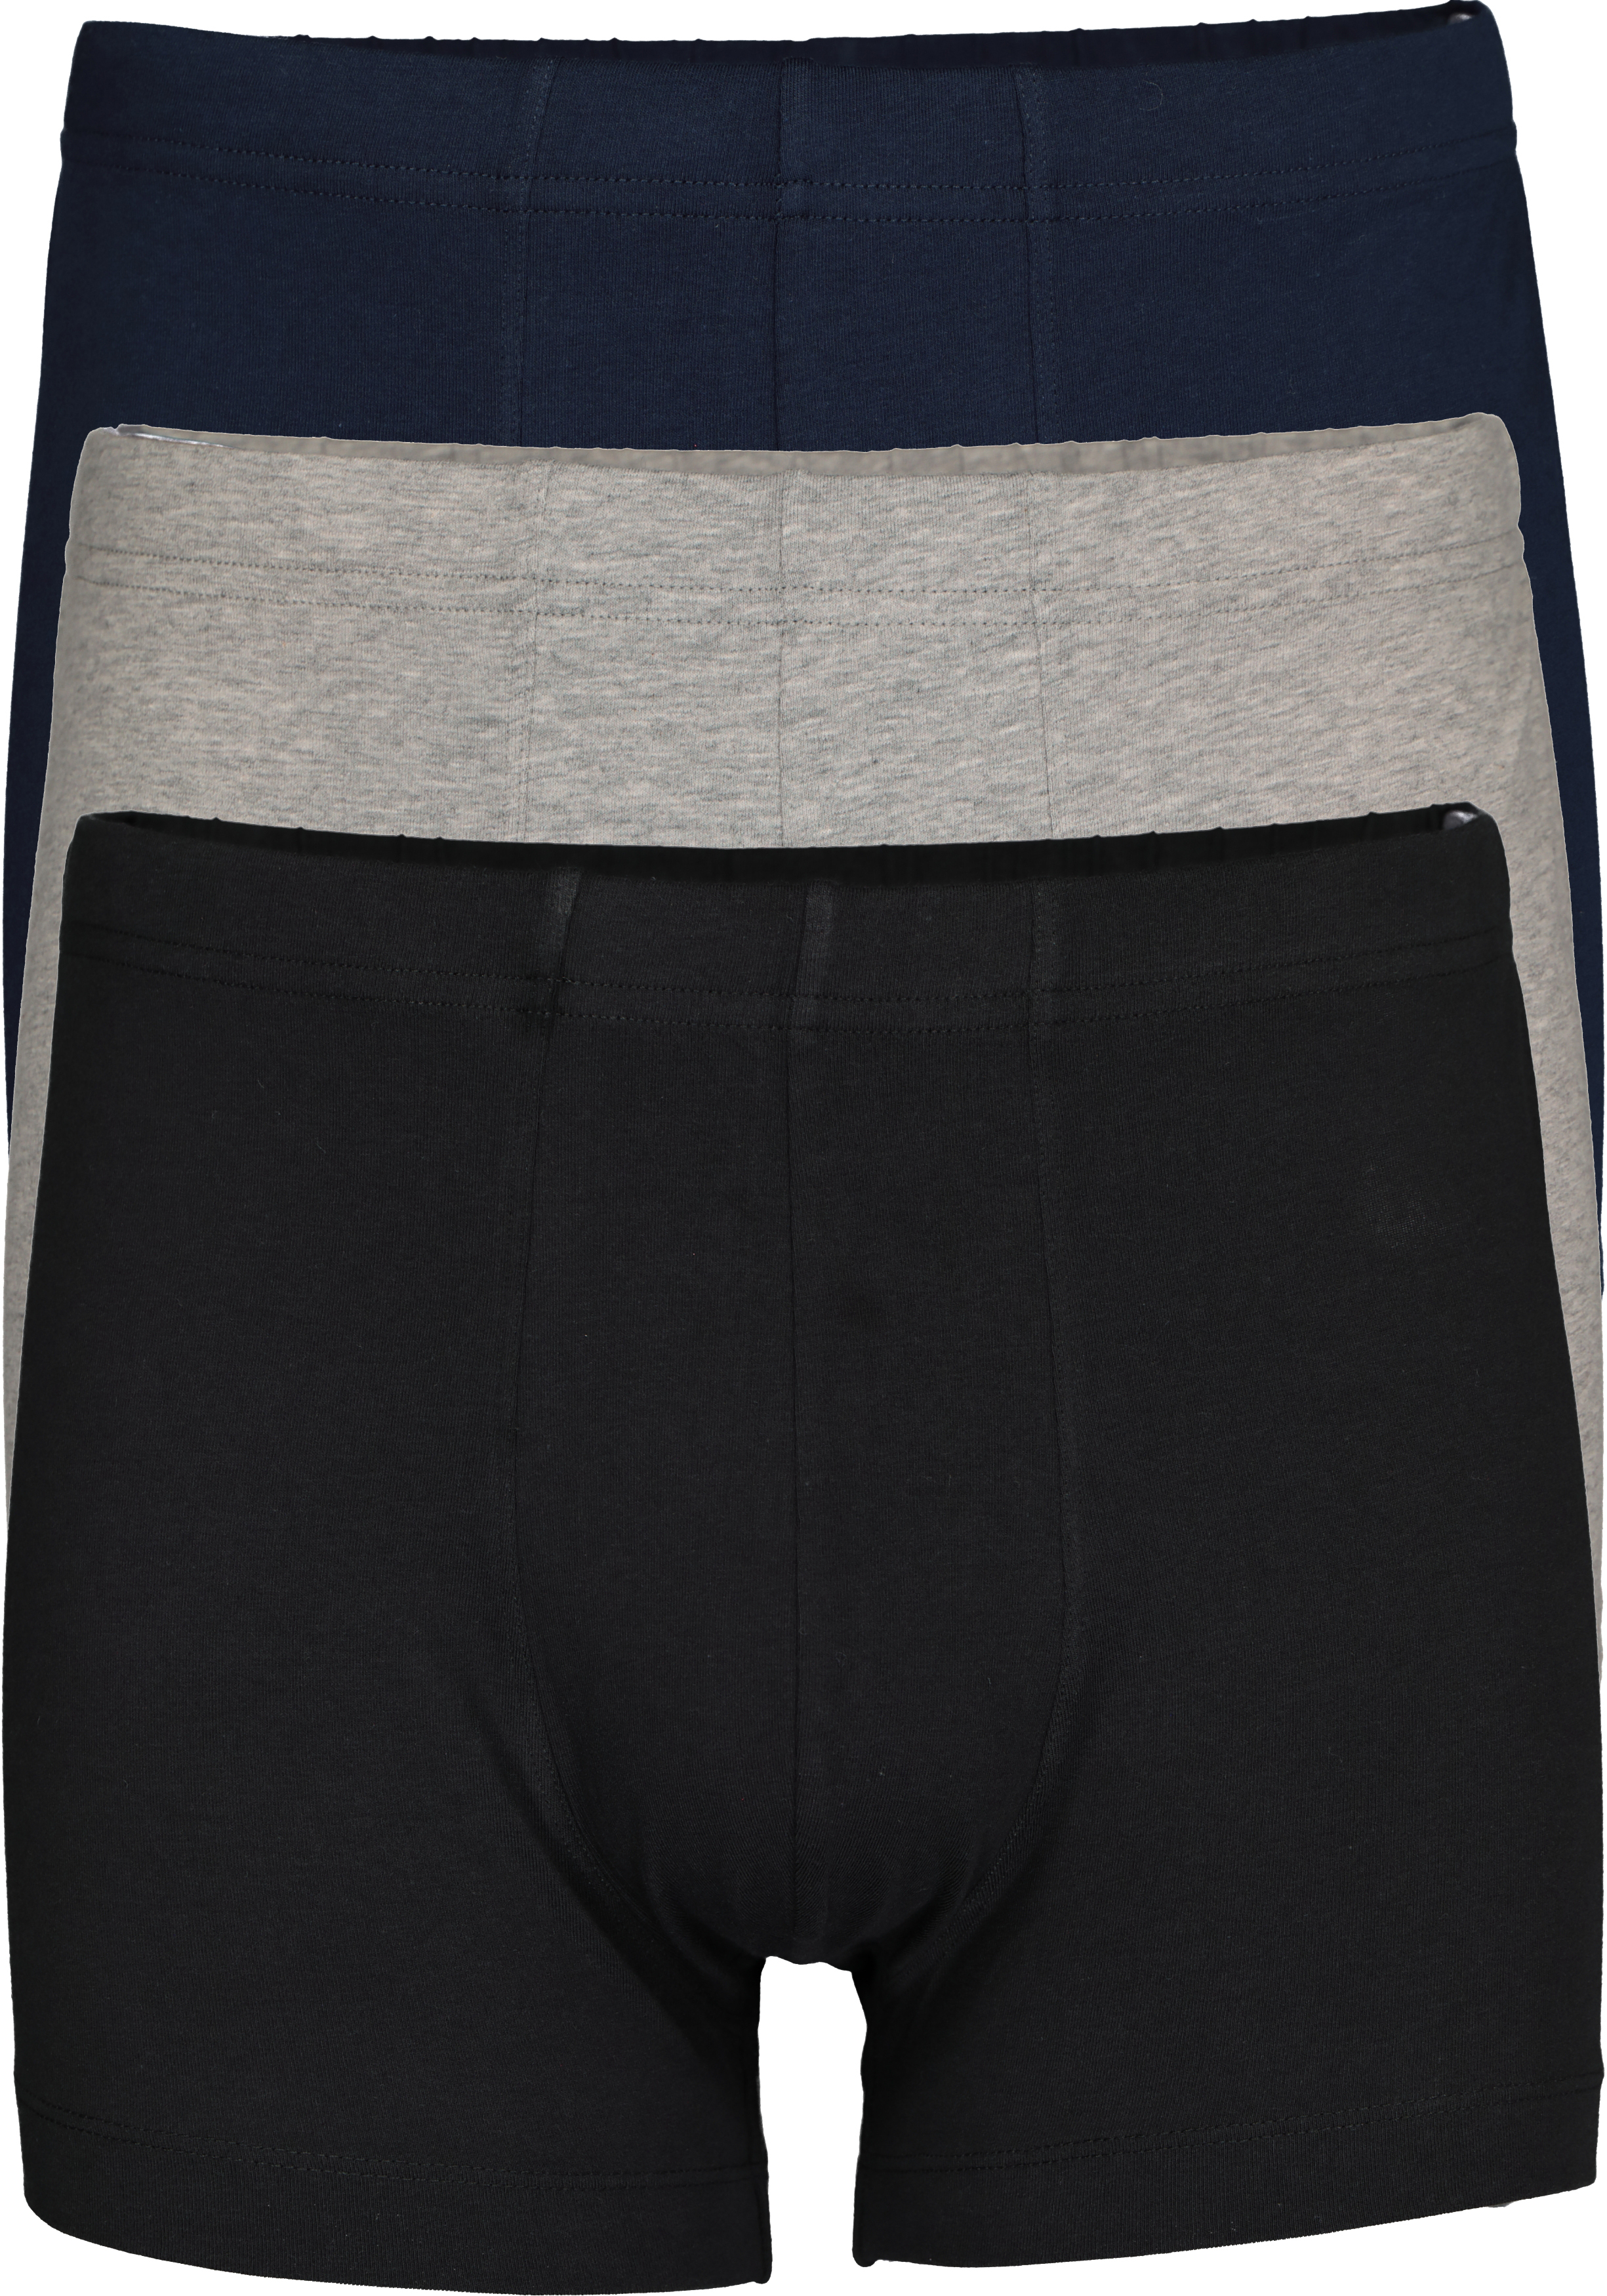 SCHIESSER 95/5 Essentials shorts (3-pack), zwart, blauw en grijs